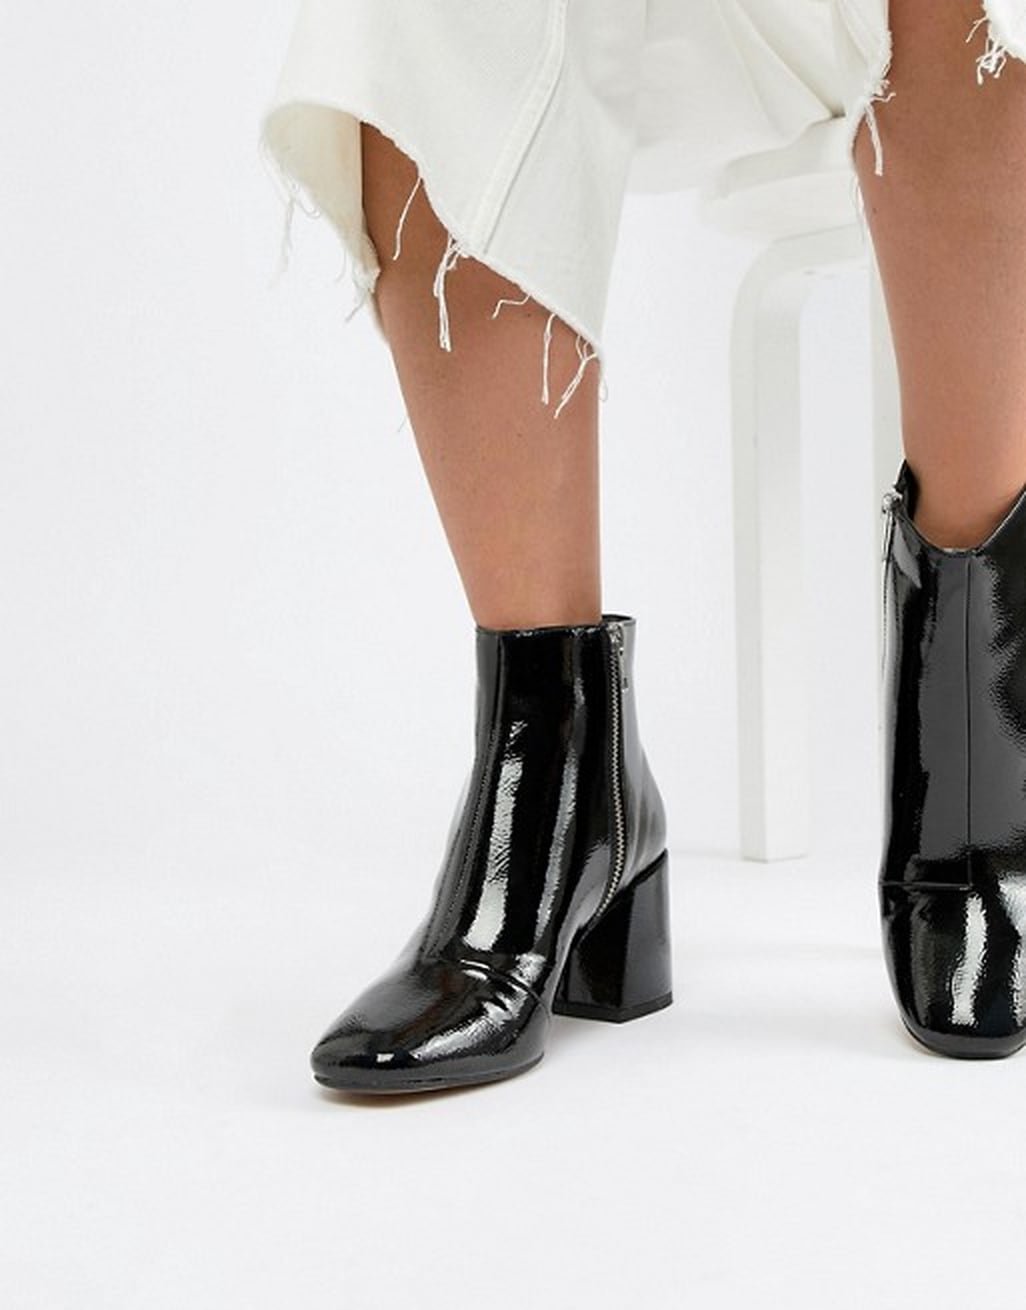 Selena Gomez Black Boots in Patent Leather 2018 | POPSUGAR Fashion